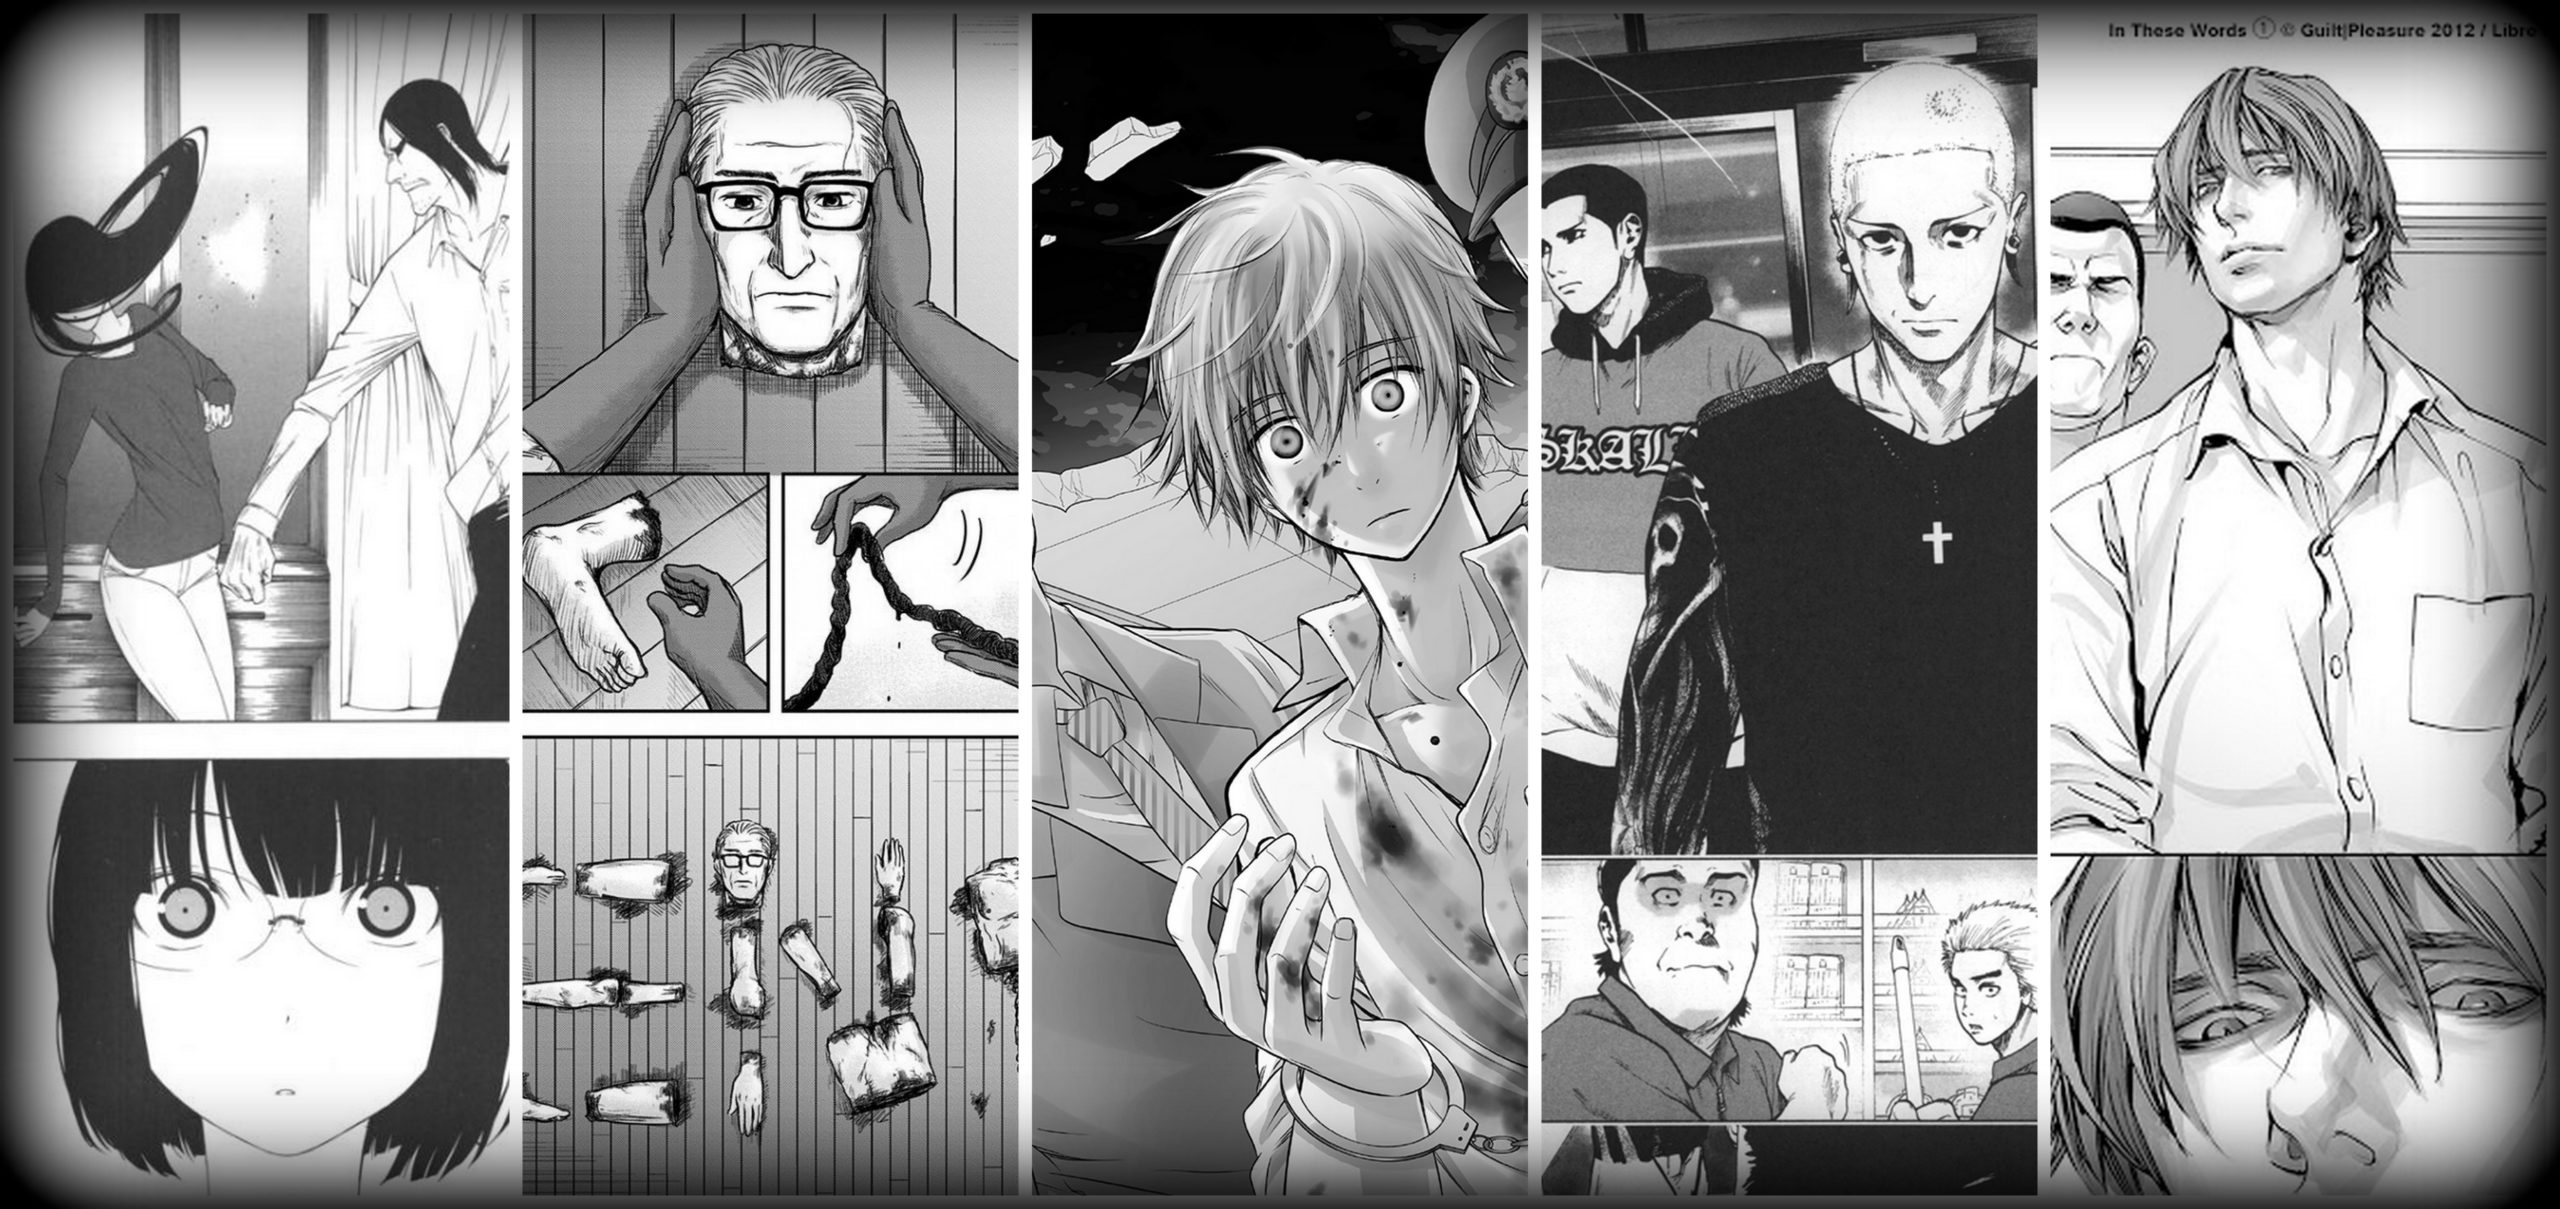 Genre VO Suspense pour 14 ans et + - Manga news